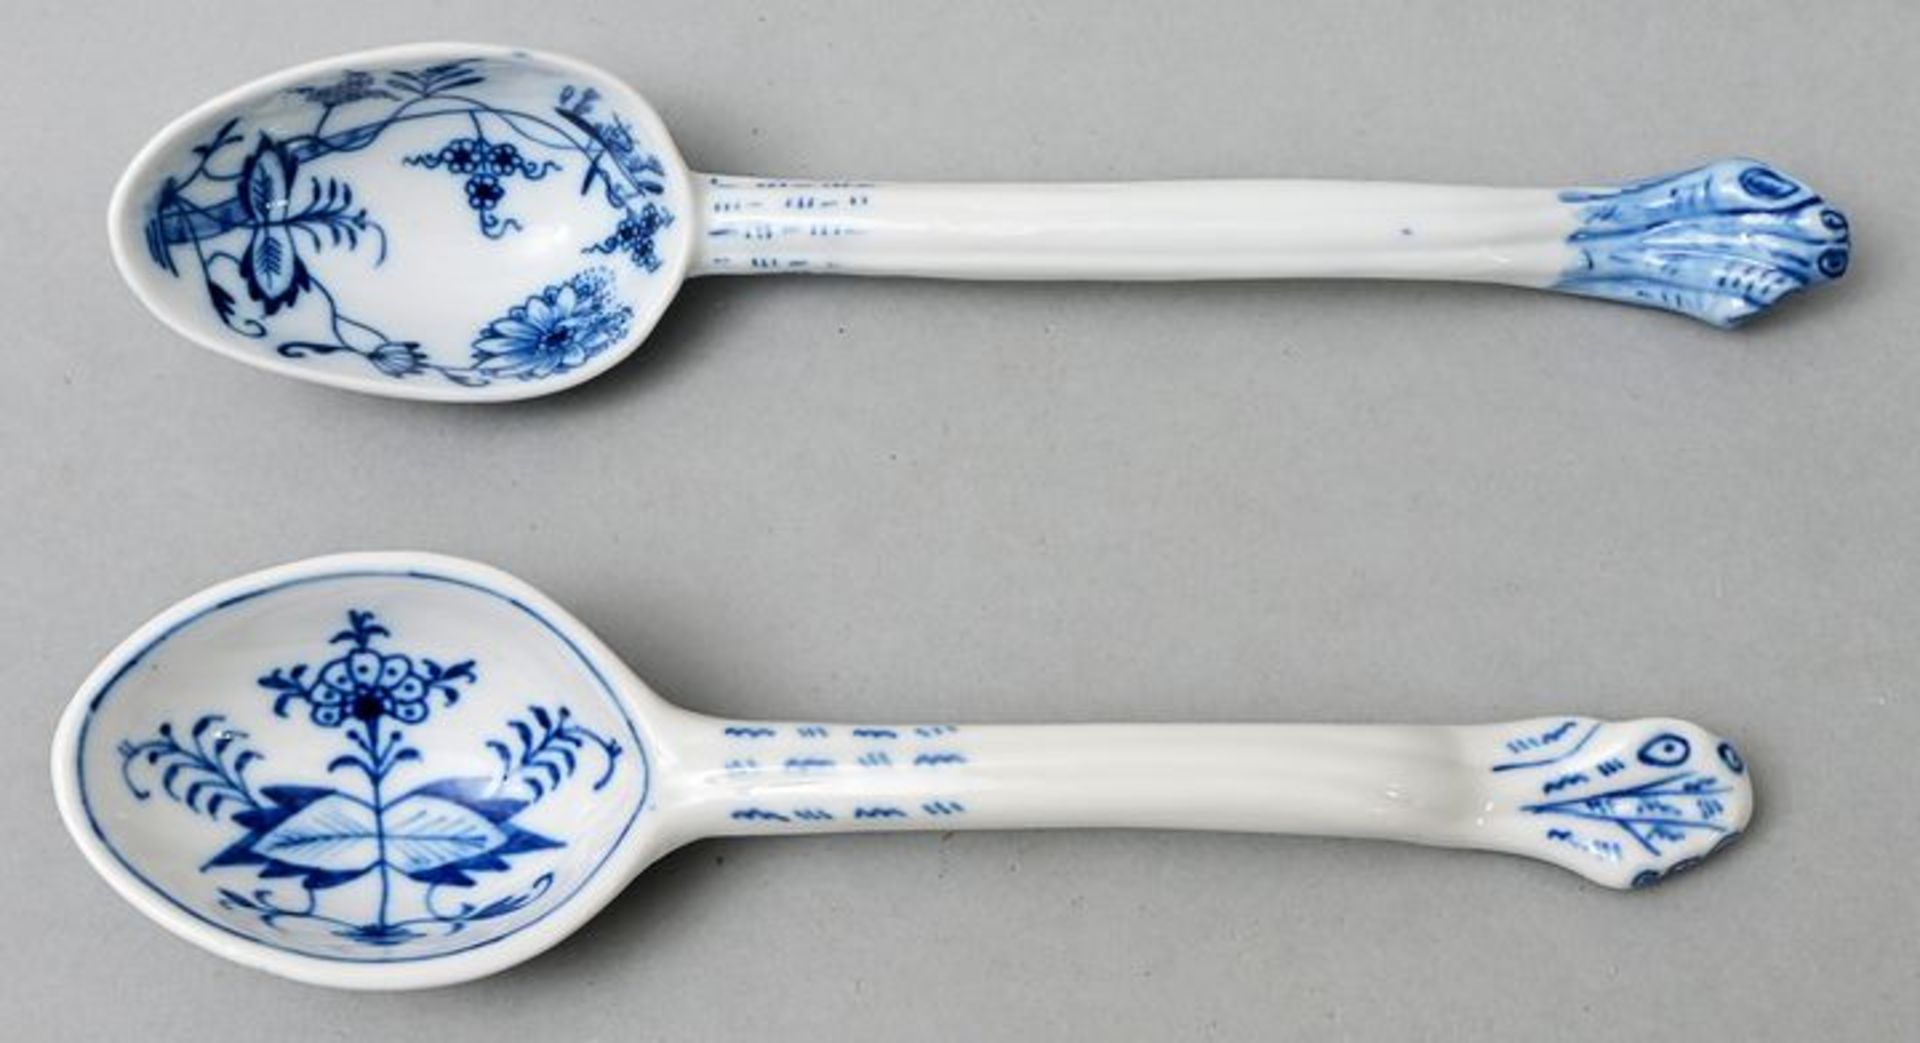 Salatlöffel/ porcelain spoon